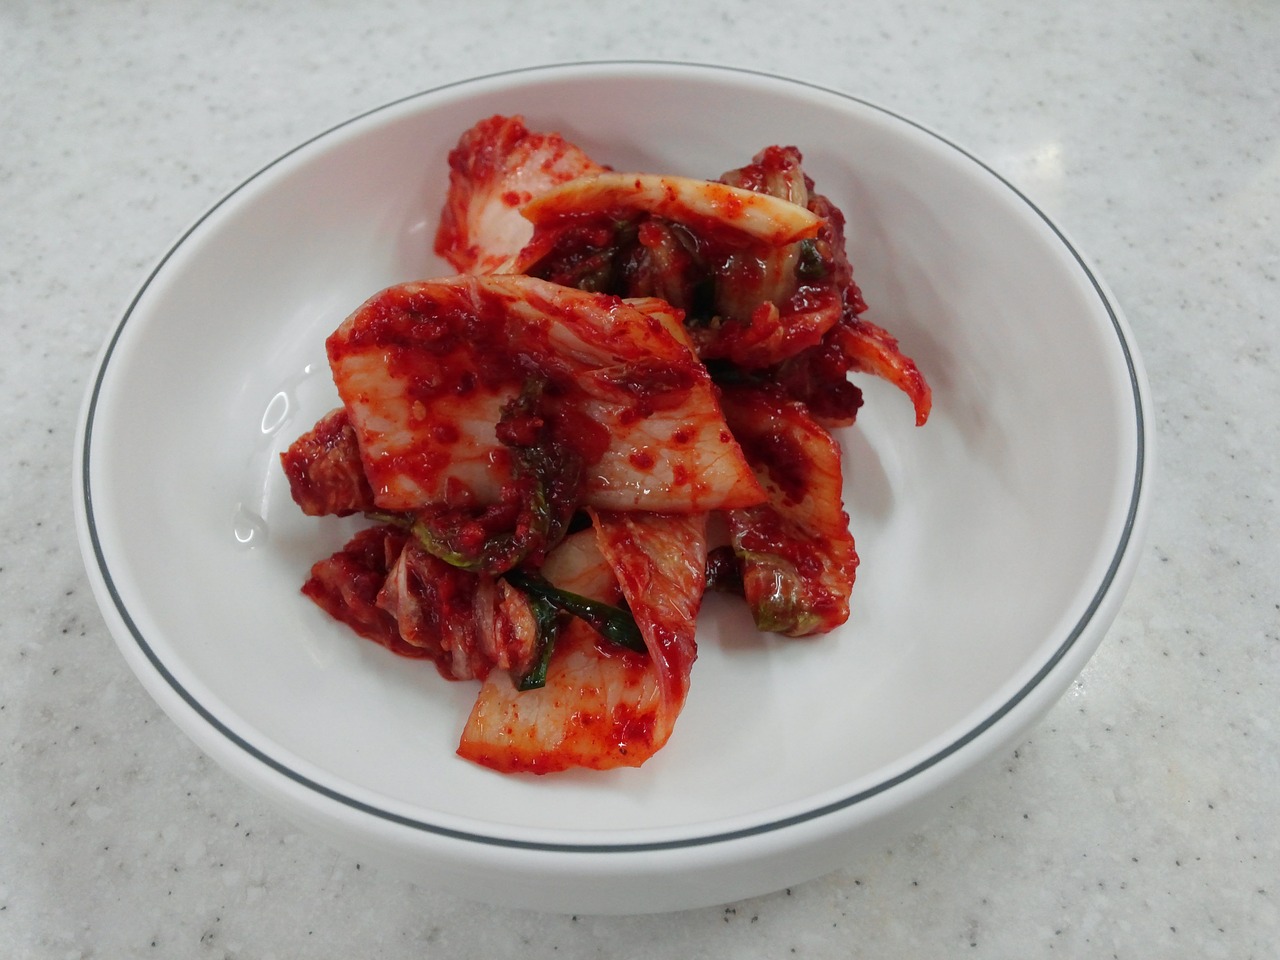 kimchi chinese cabbage republic of korea free photo